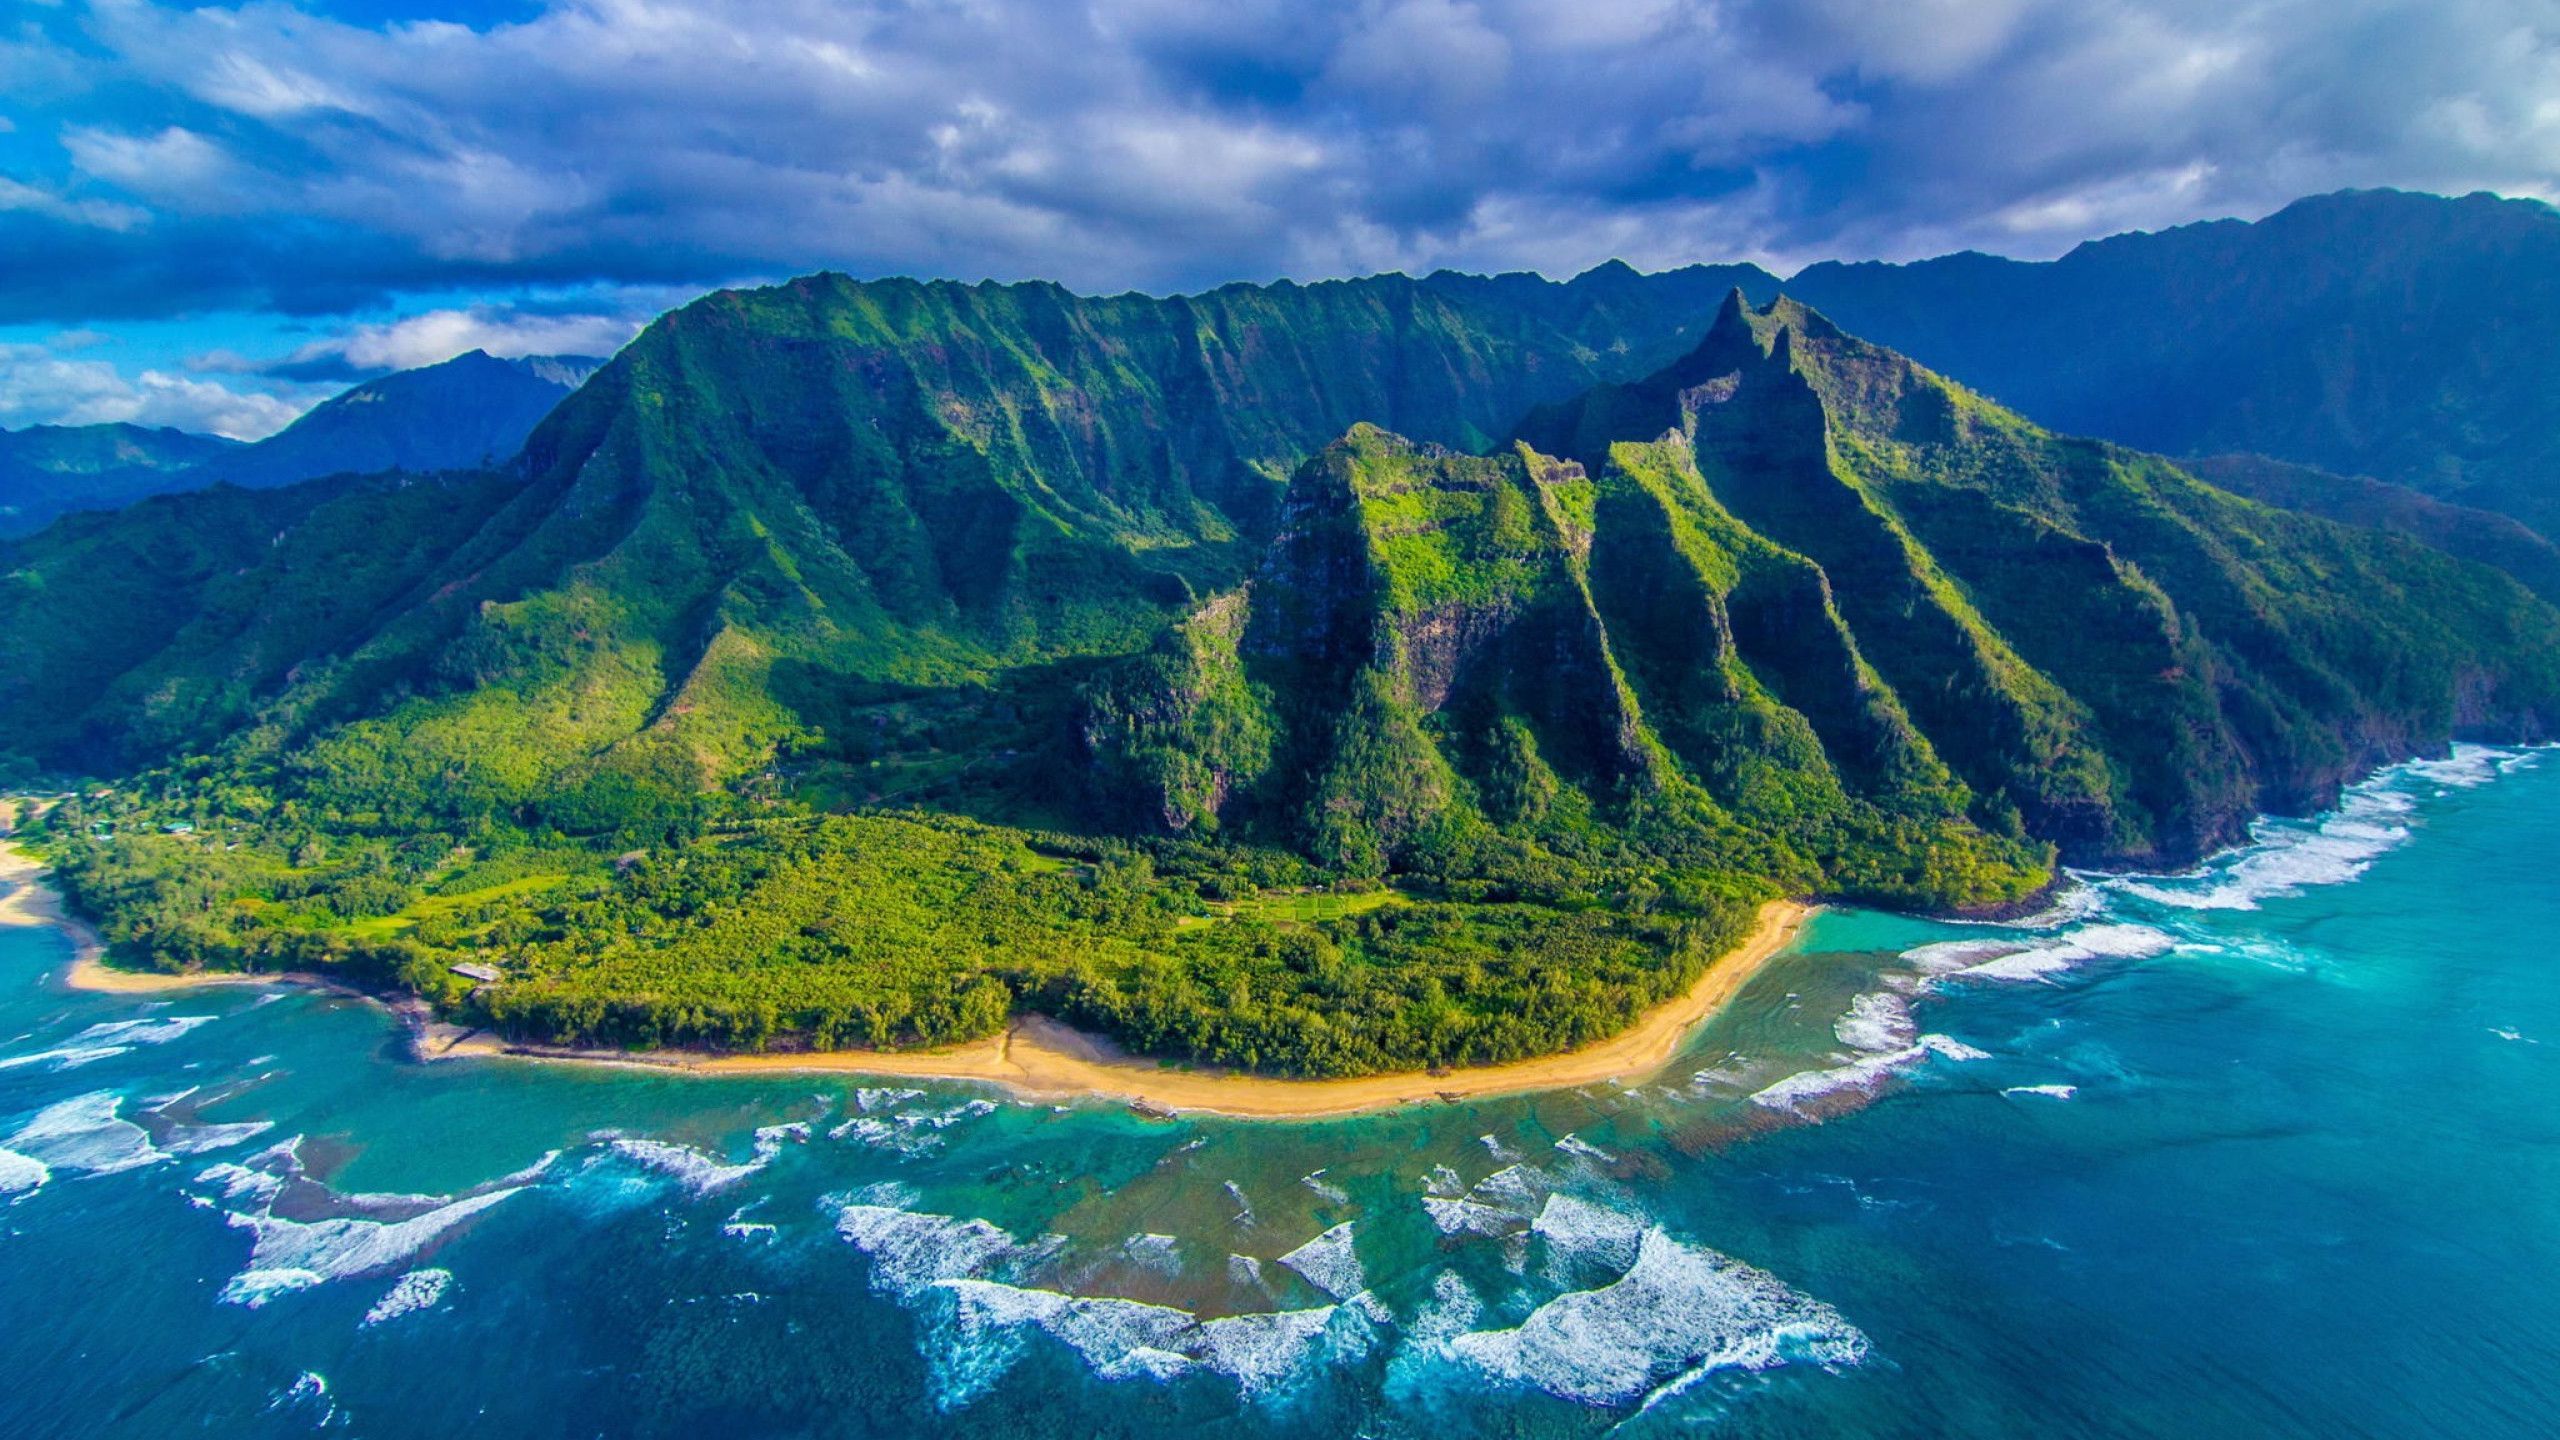 Hình nền máy tính Hawaii - Nếu bạn đam mê du lịch và yêu tình trạng bình yên, hãy tải về hình nền máy tính Hawaii ngay lập tức. Nó không chỉ là một bức tranh, nó còn đưa bạn đến thiên đường xanh mát, tay trong tay những người bạn khiến cho nó càng thú vị hơn.